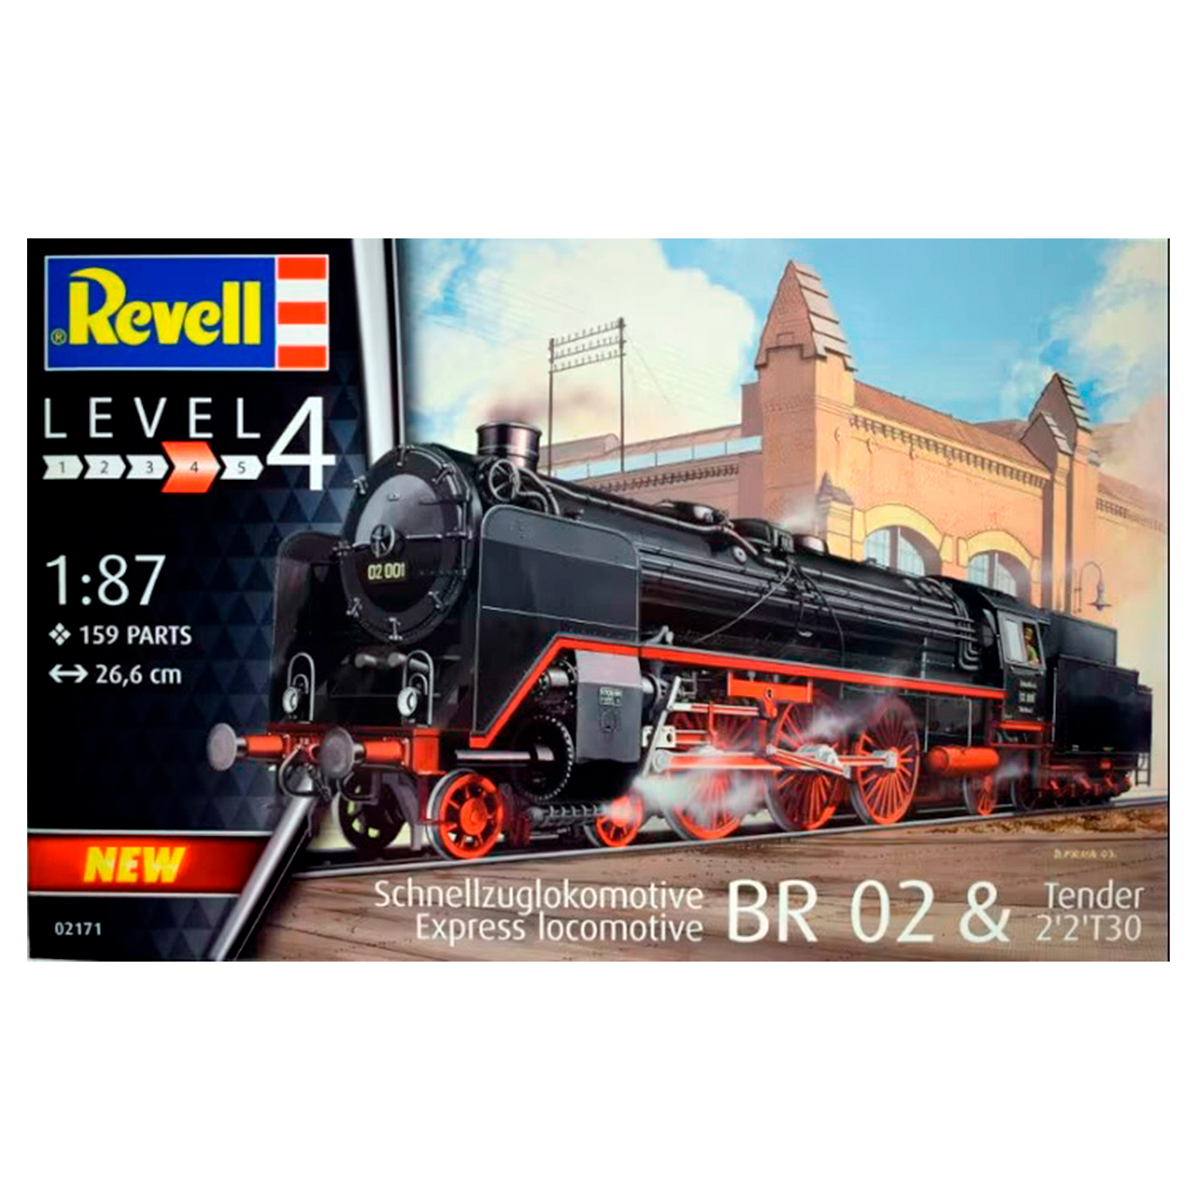 Express locomotive BR 02 & Tender 2’2’T30 1/87